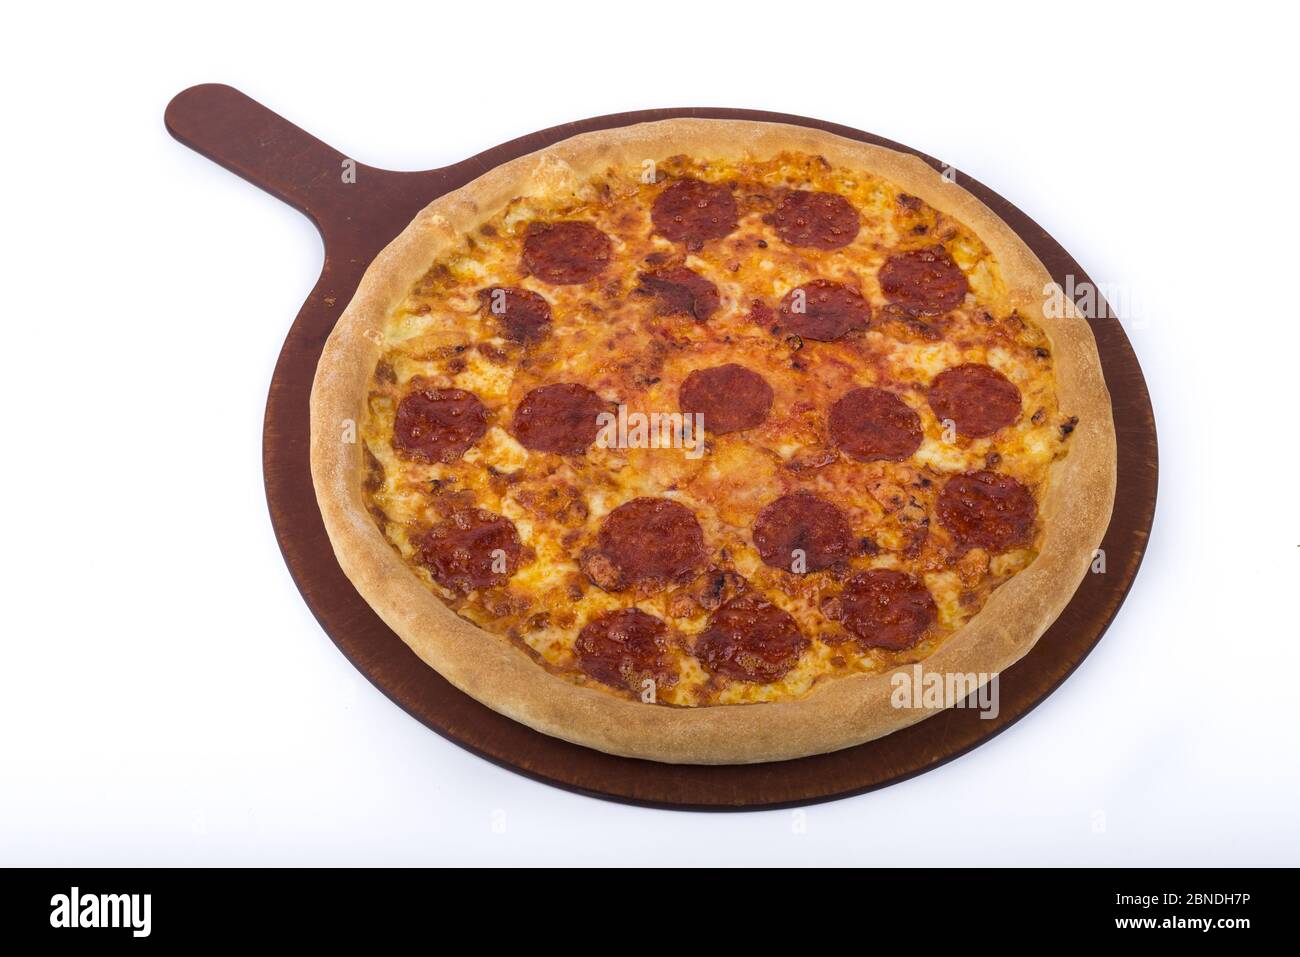 Délicieuse pizza sur une assiette en bois avec des garnitures de pepperoni Banque D'Images